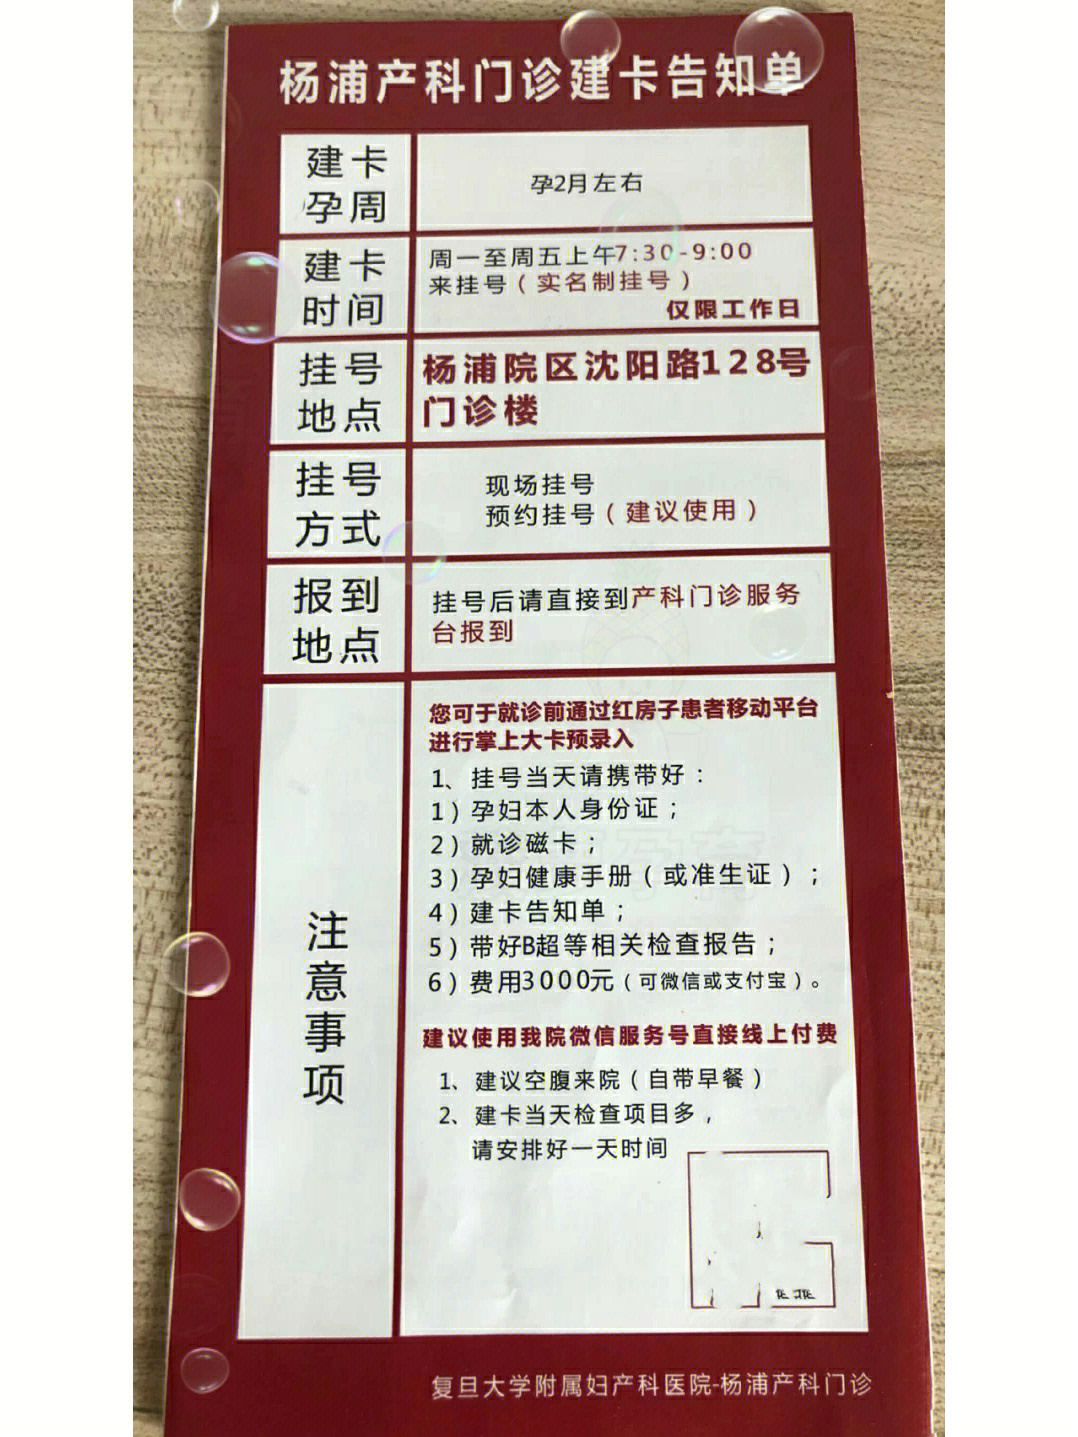 上海杨浦区红房子医院建卡条件及建卡流程